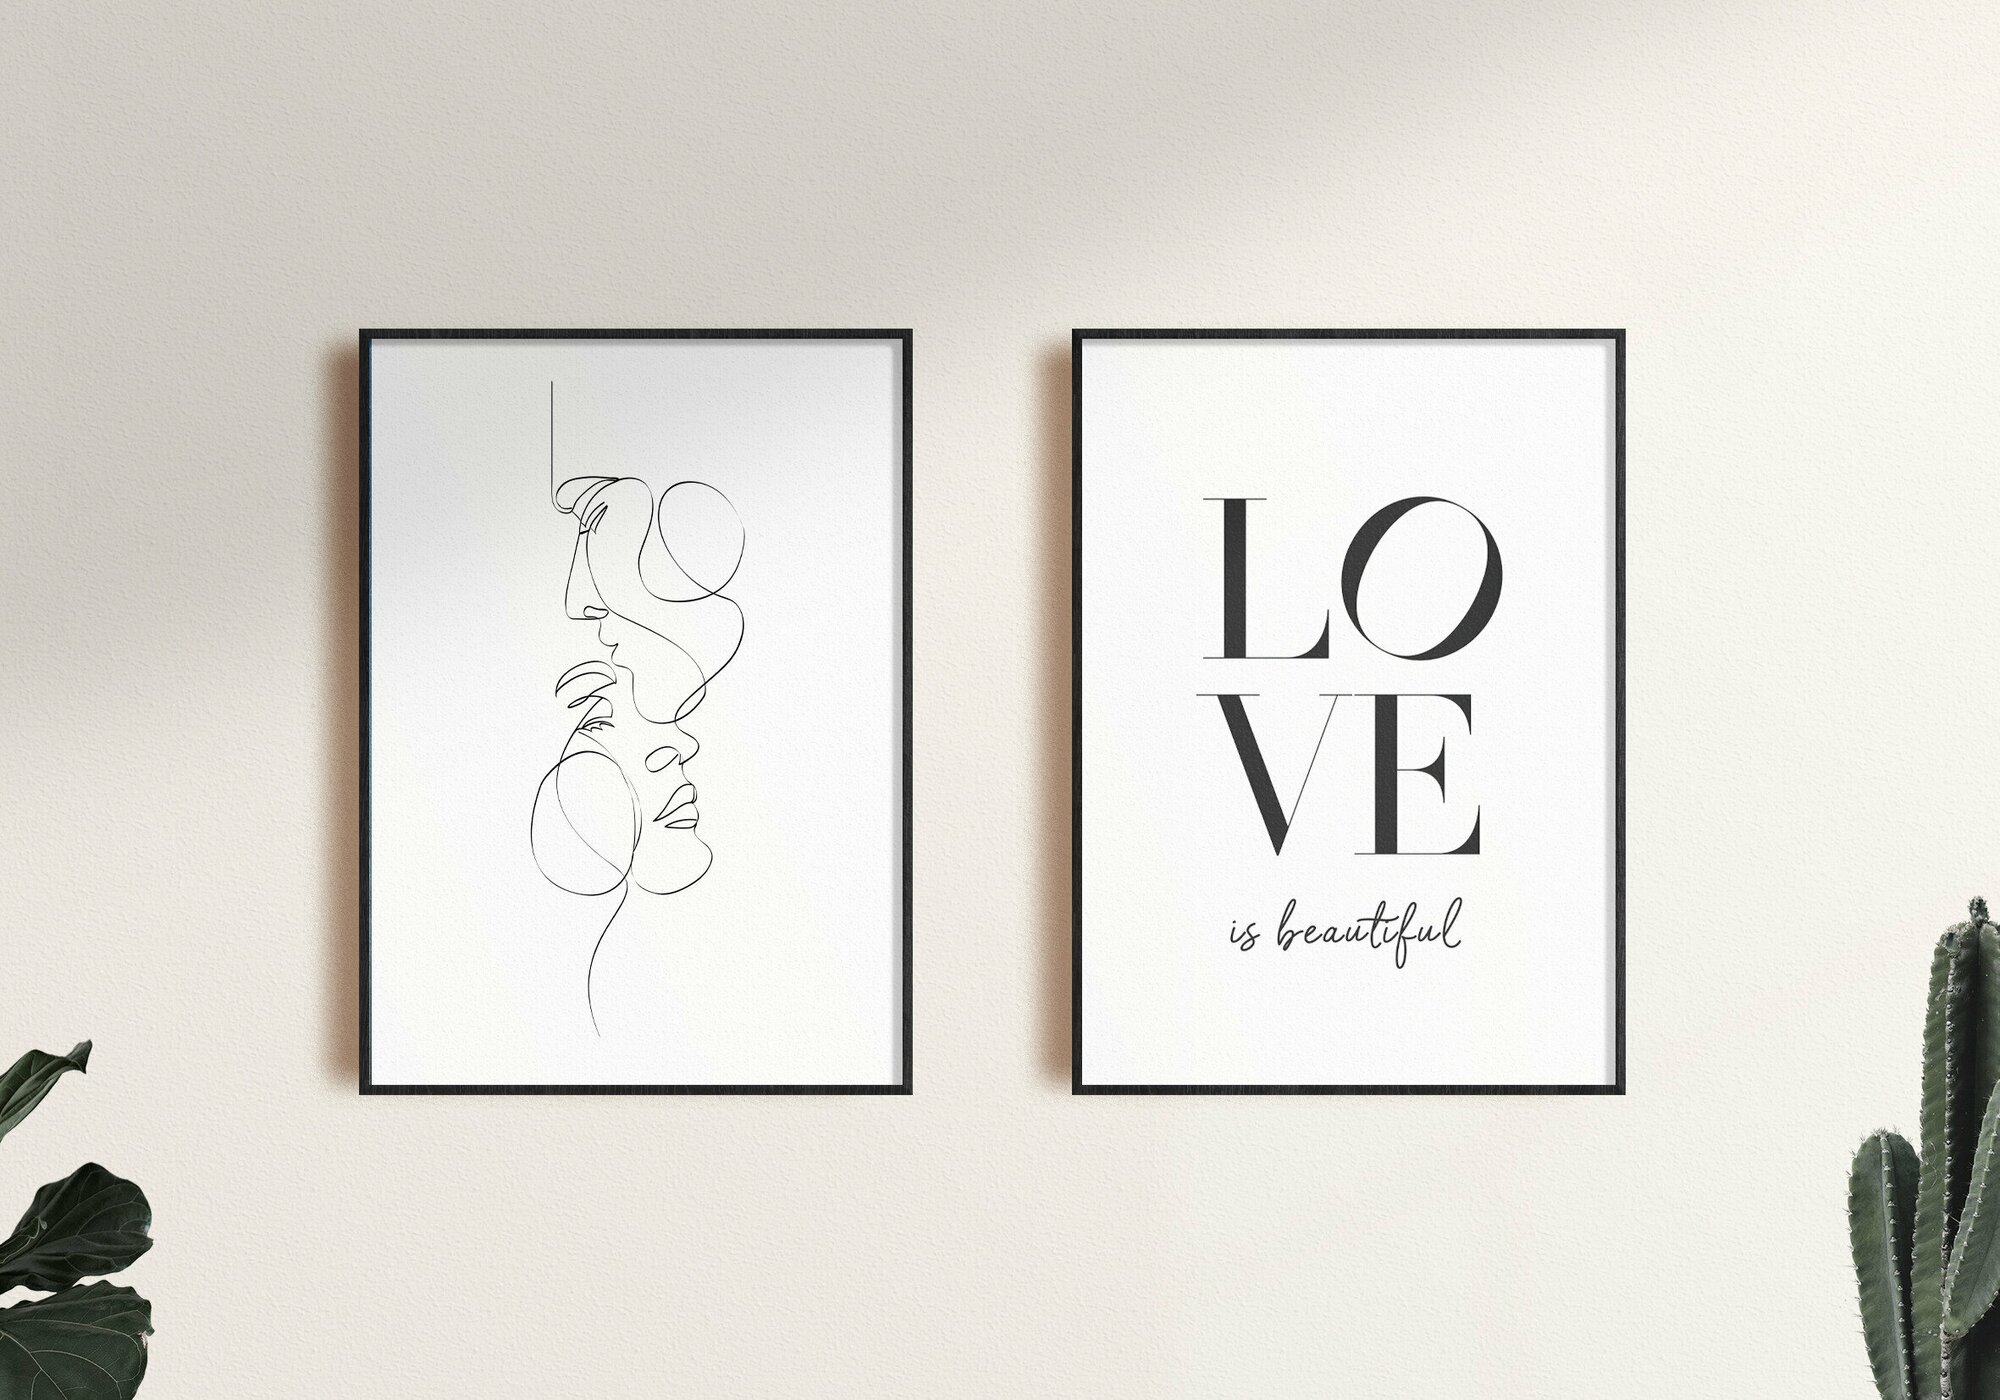 Набор плакатов "Любовь" 2 шт. / Набор интерьерных постеров формата А4 (21х30 см) c черной рамкой